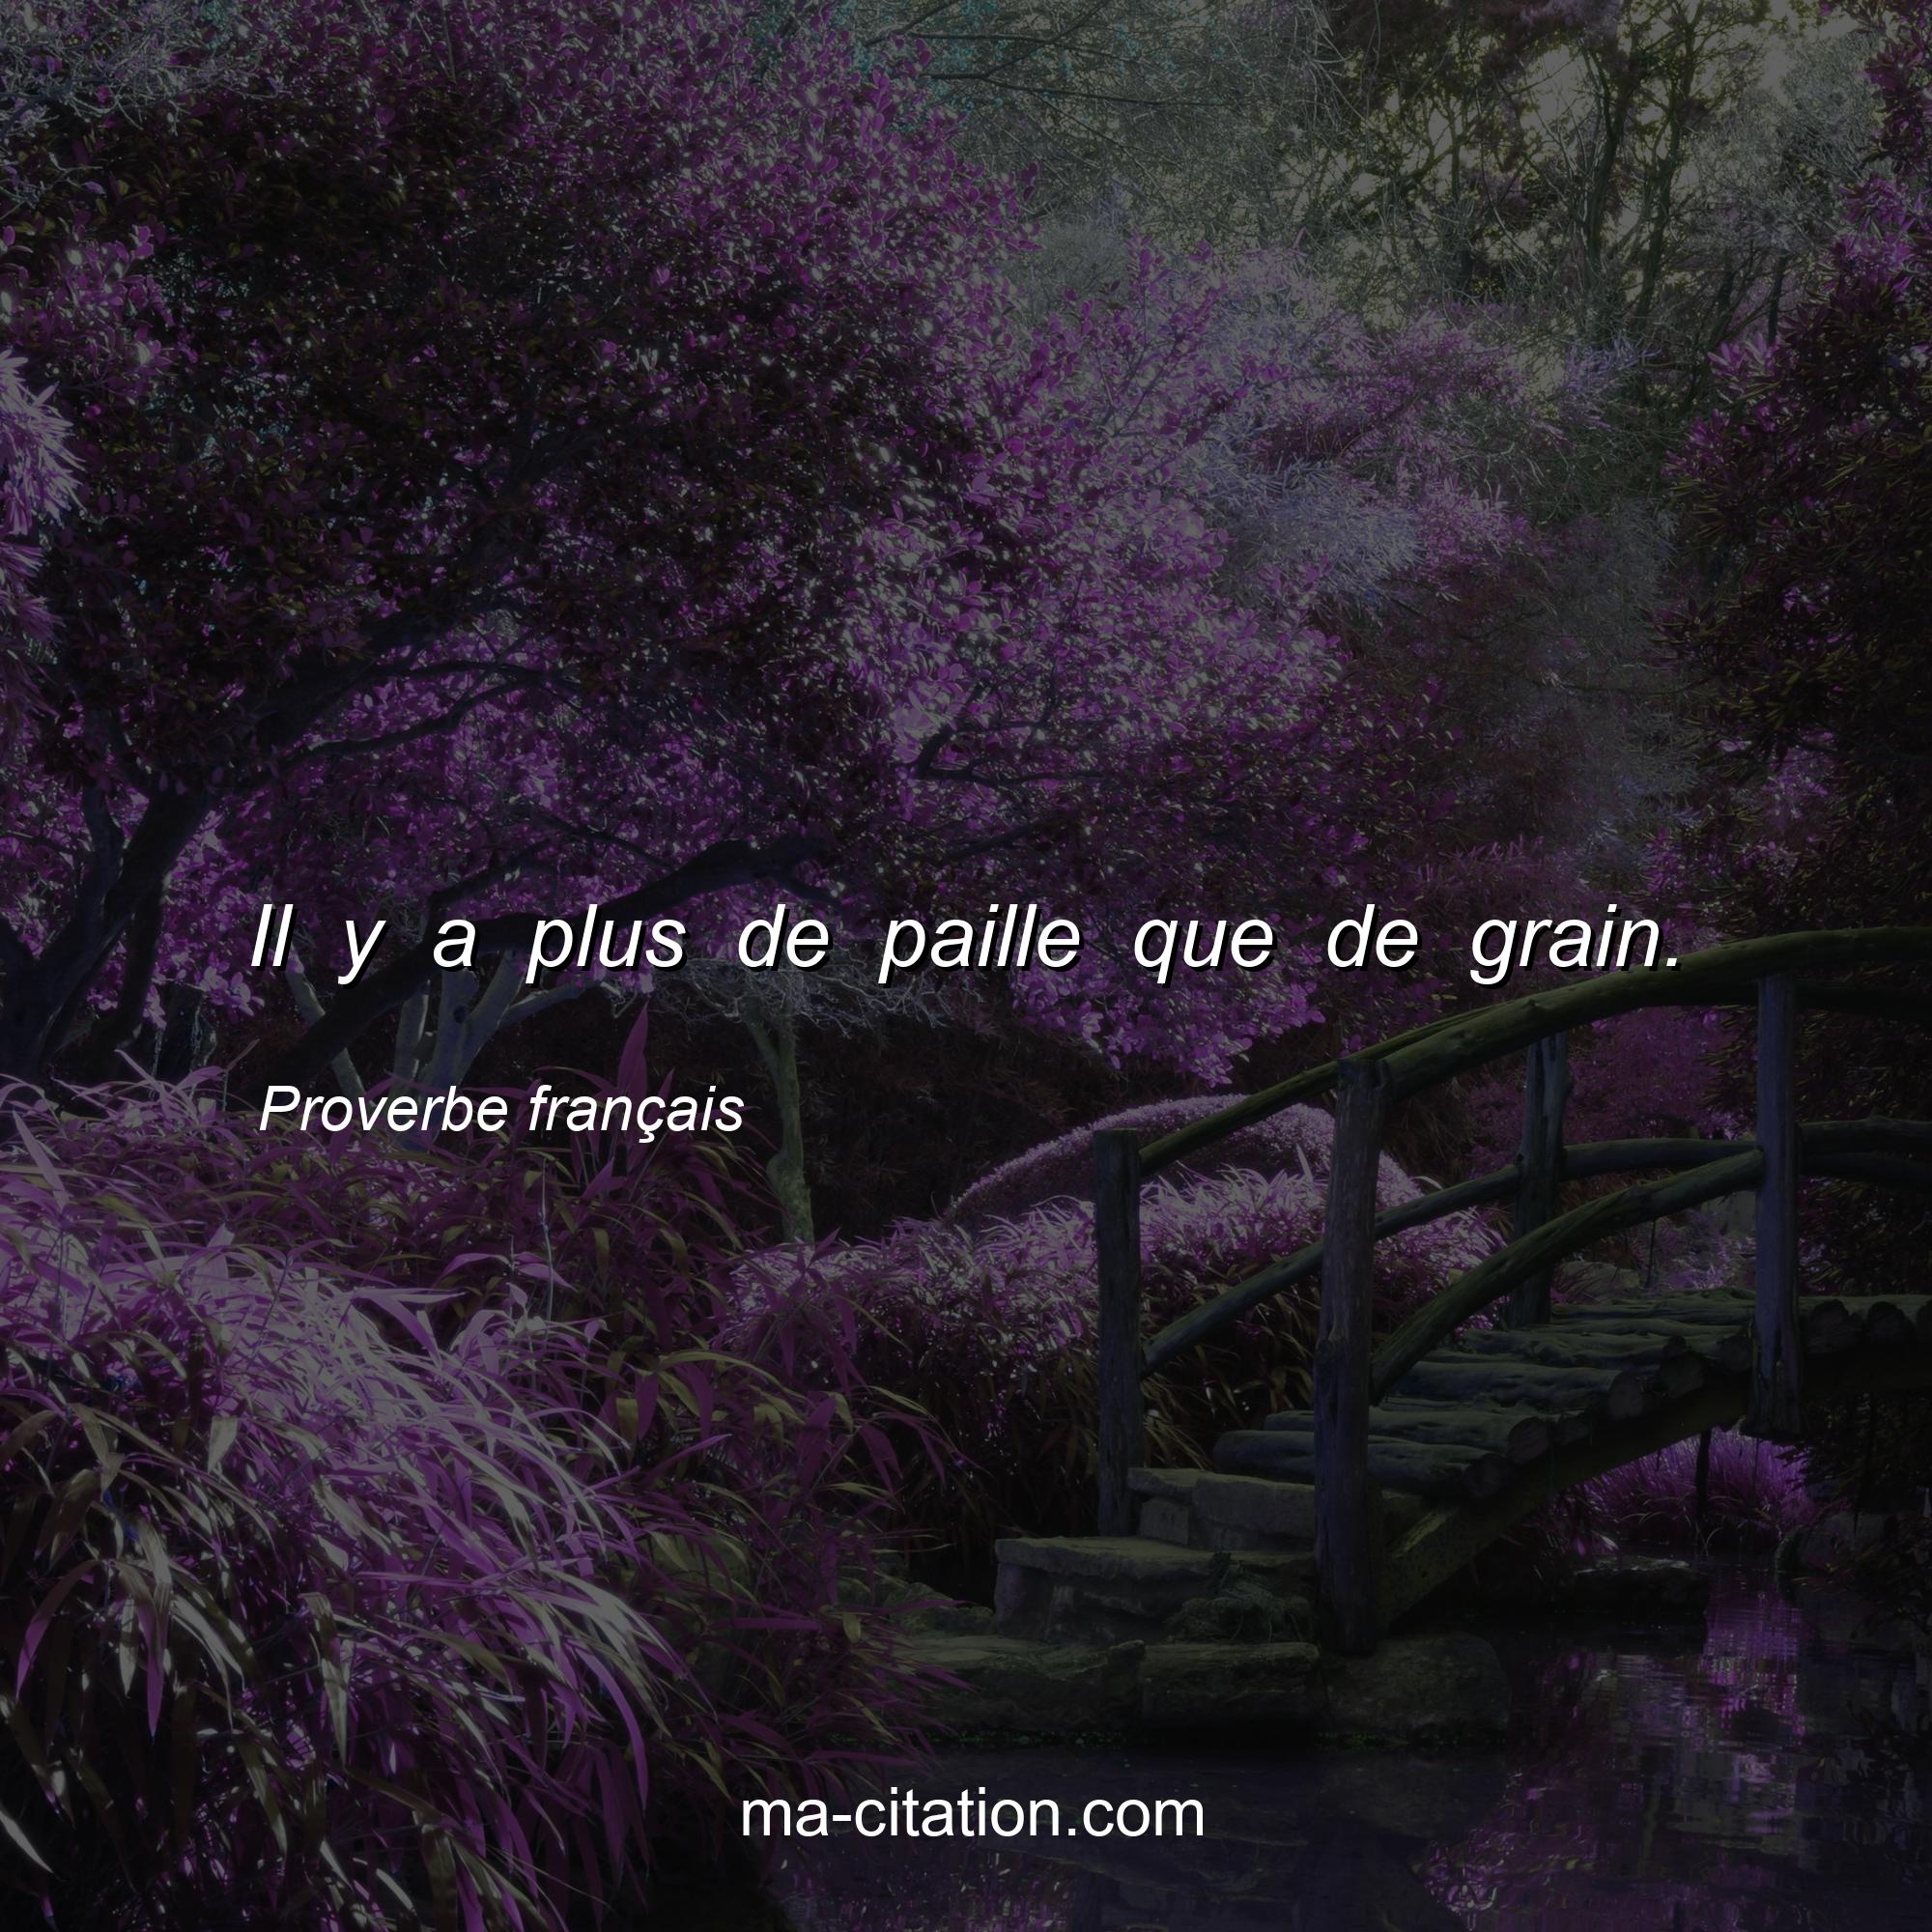 Proverbe français : Il y a plus de paille que de grain.